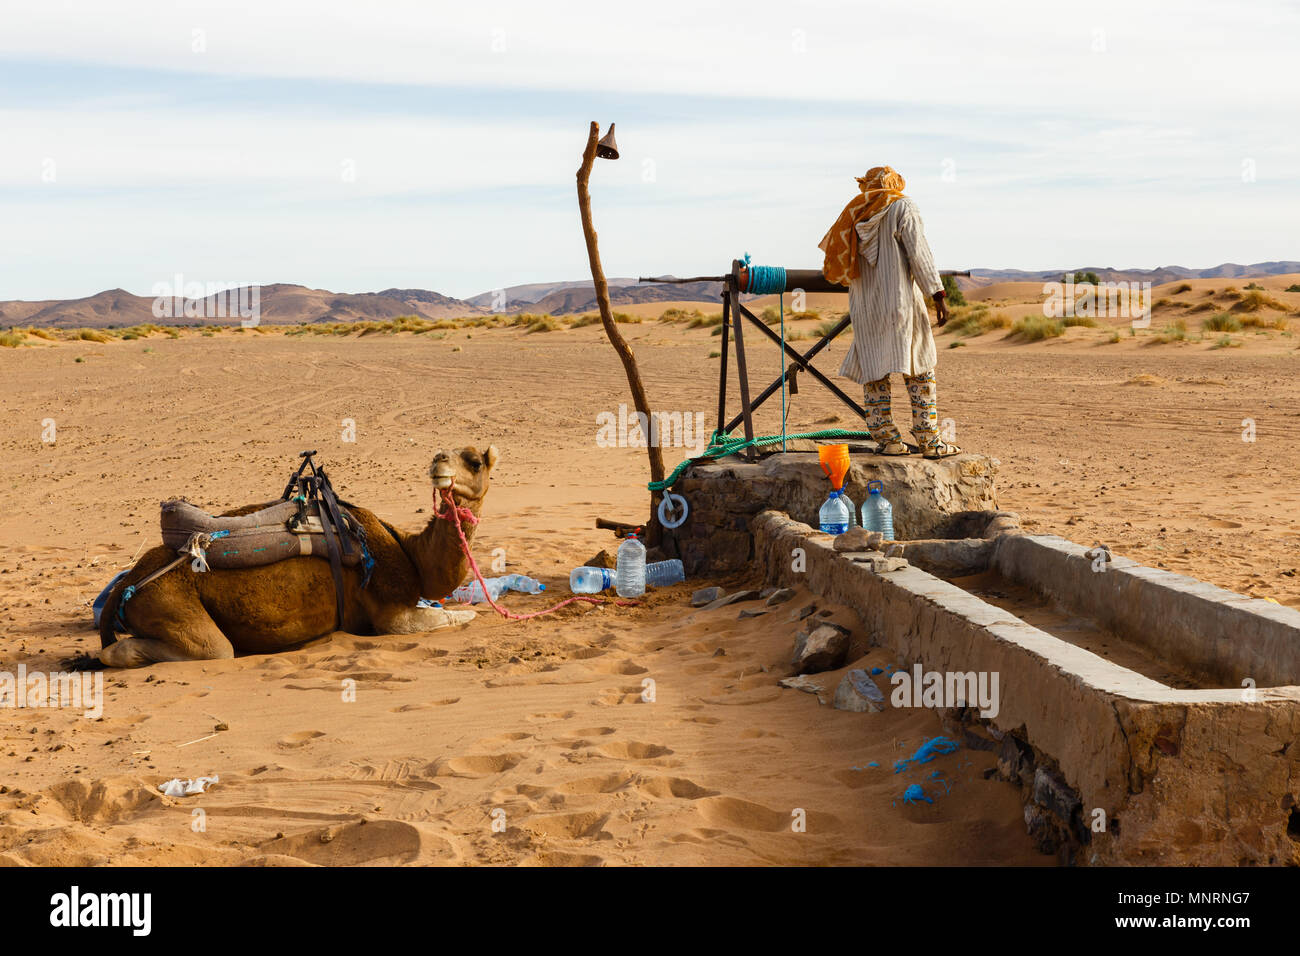 Le berbère et camel près du puits, Maroc Banque D'Images